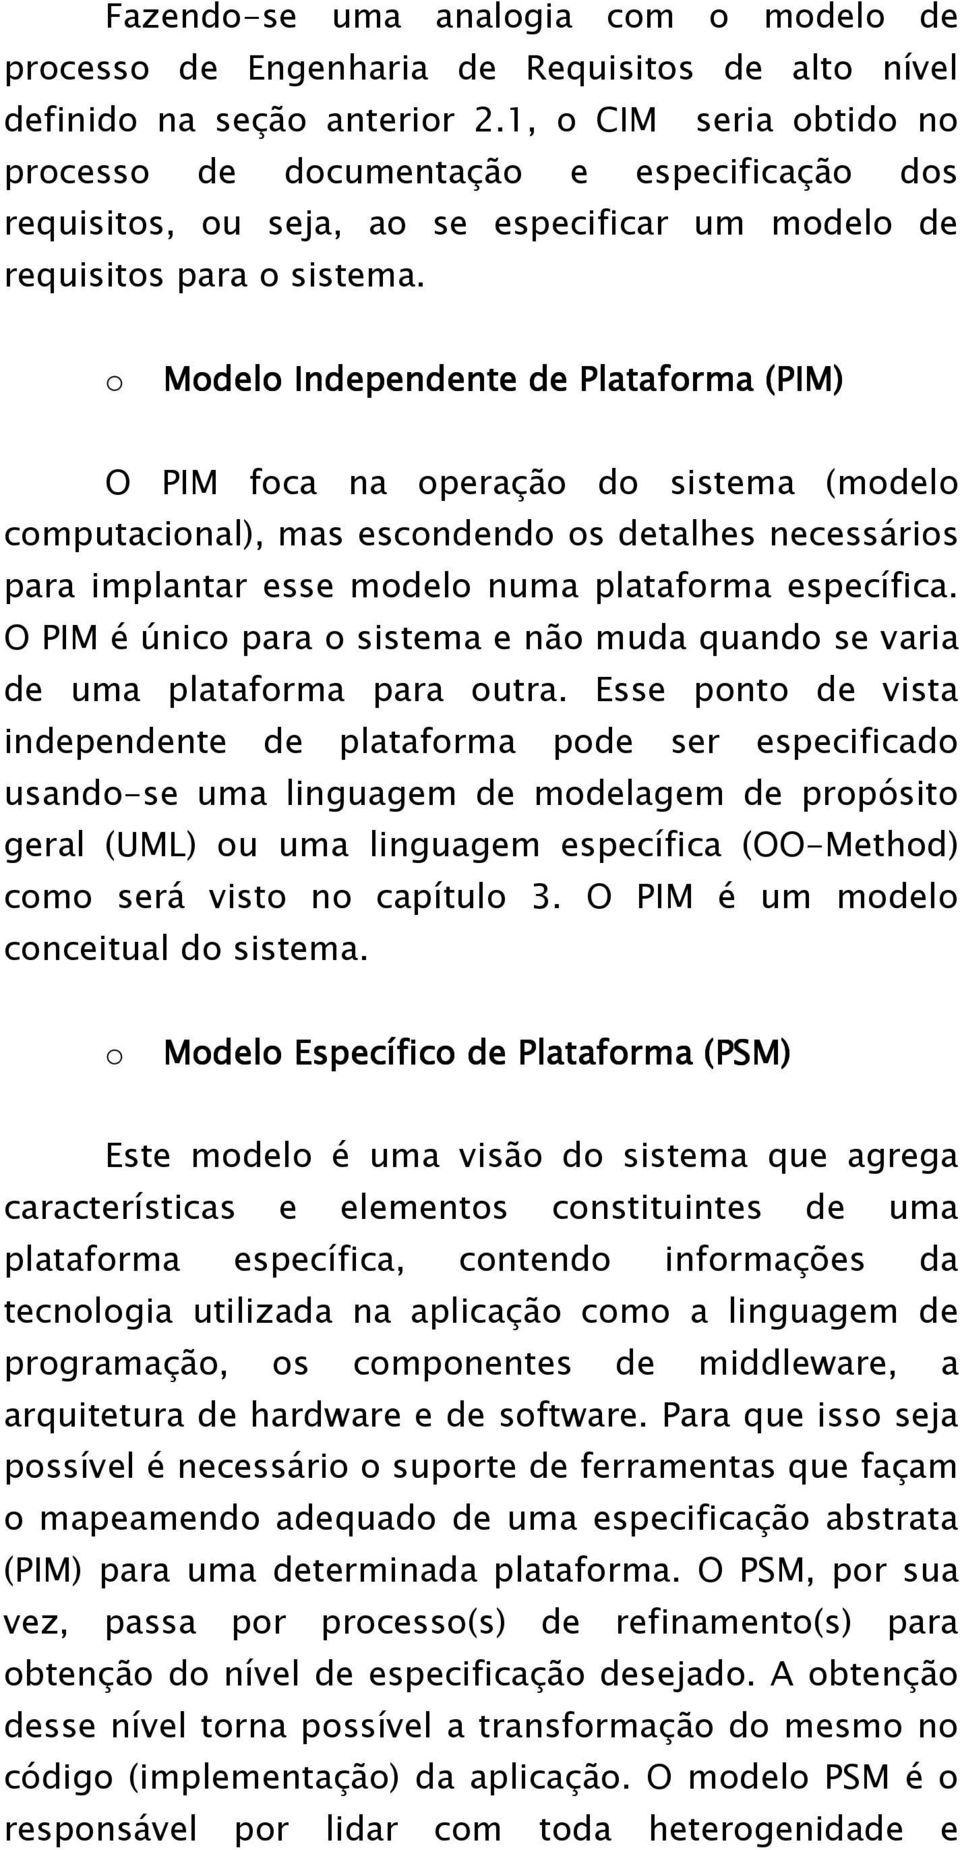 o Modelo Independente de Plataforma (PIM) O PIM foca na operação do sistema (modelo computacional), mas escondendo os detalhes necessários para implantar esse modelo numa plataforma específica.